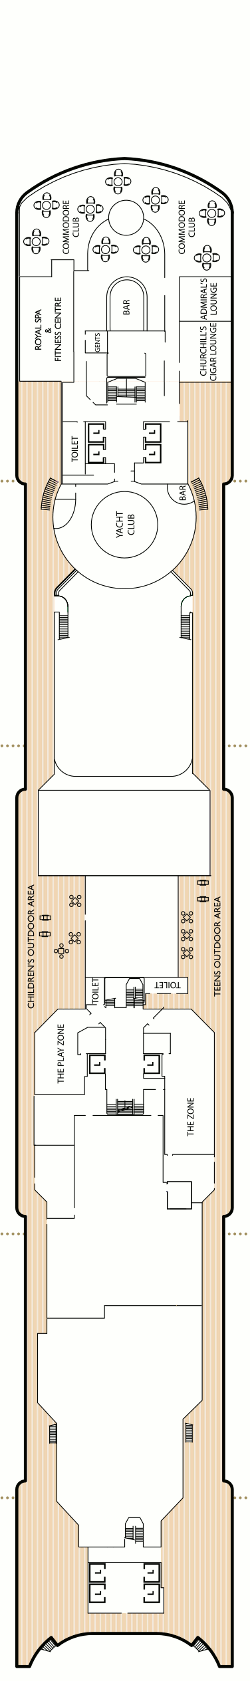 Queen Victoria Deck Ten Deck Plan